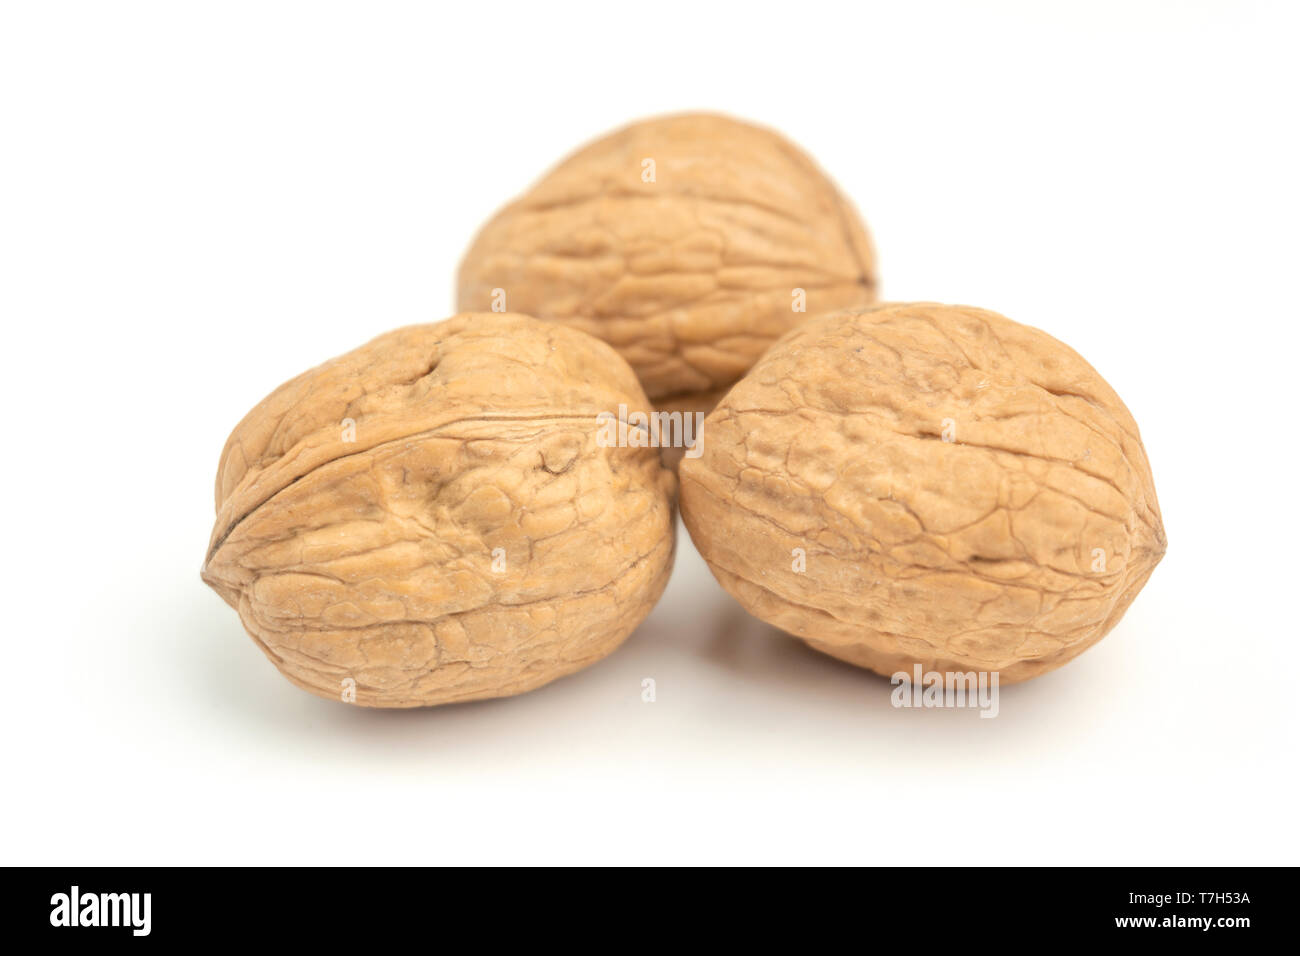 Close-up de nueces frescas aislado sobre fondo blanco. Tuercas saludable con los ácidos grasos omega 3 y antioxidantes para una piel hermosa y vida sana. Foto de stock